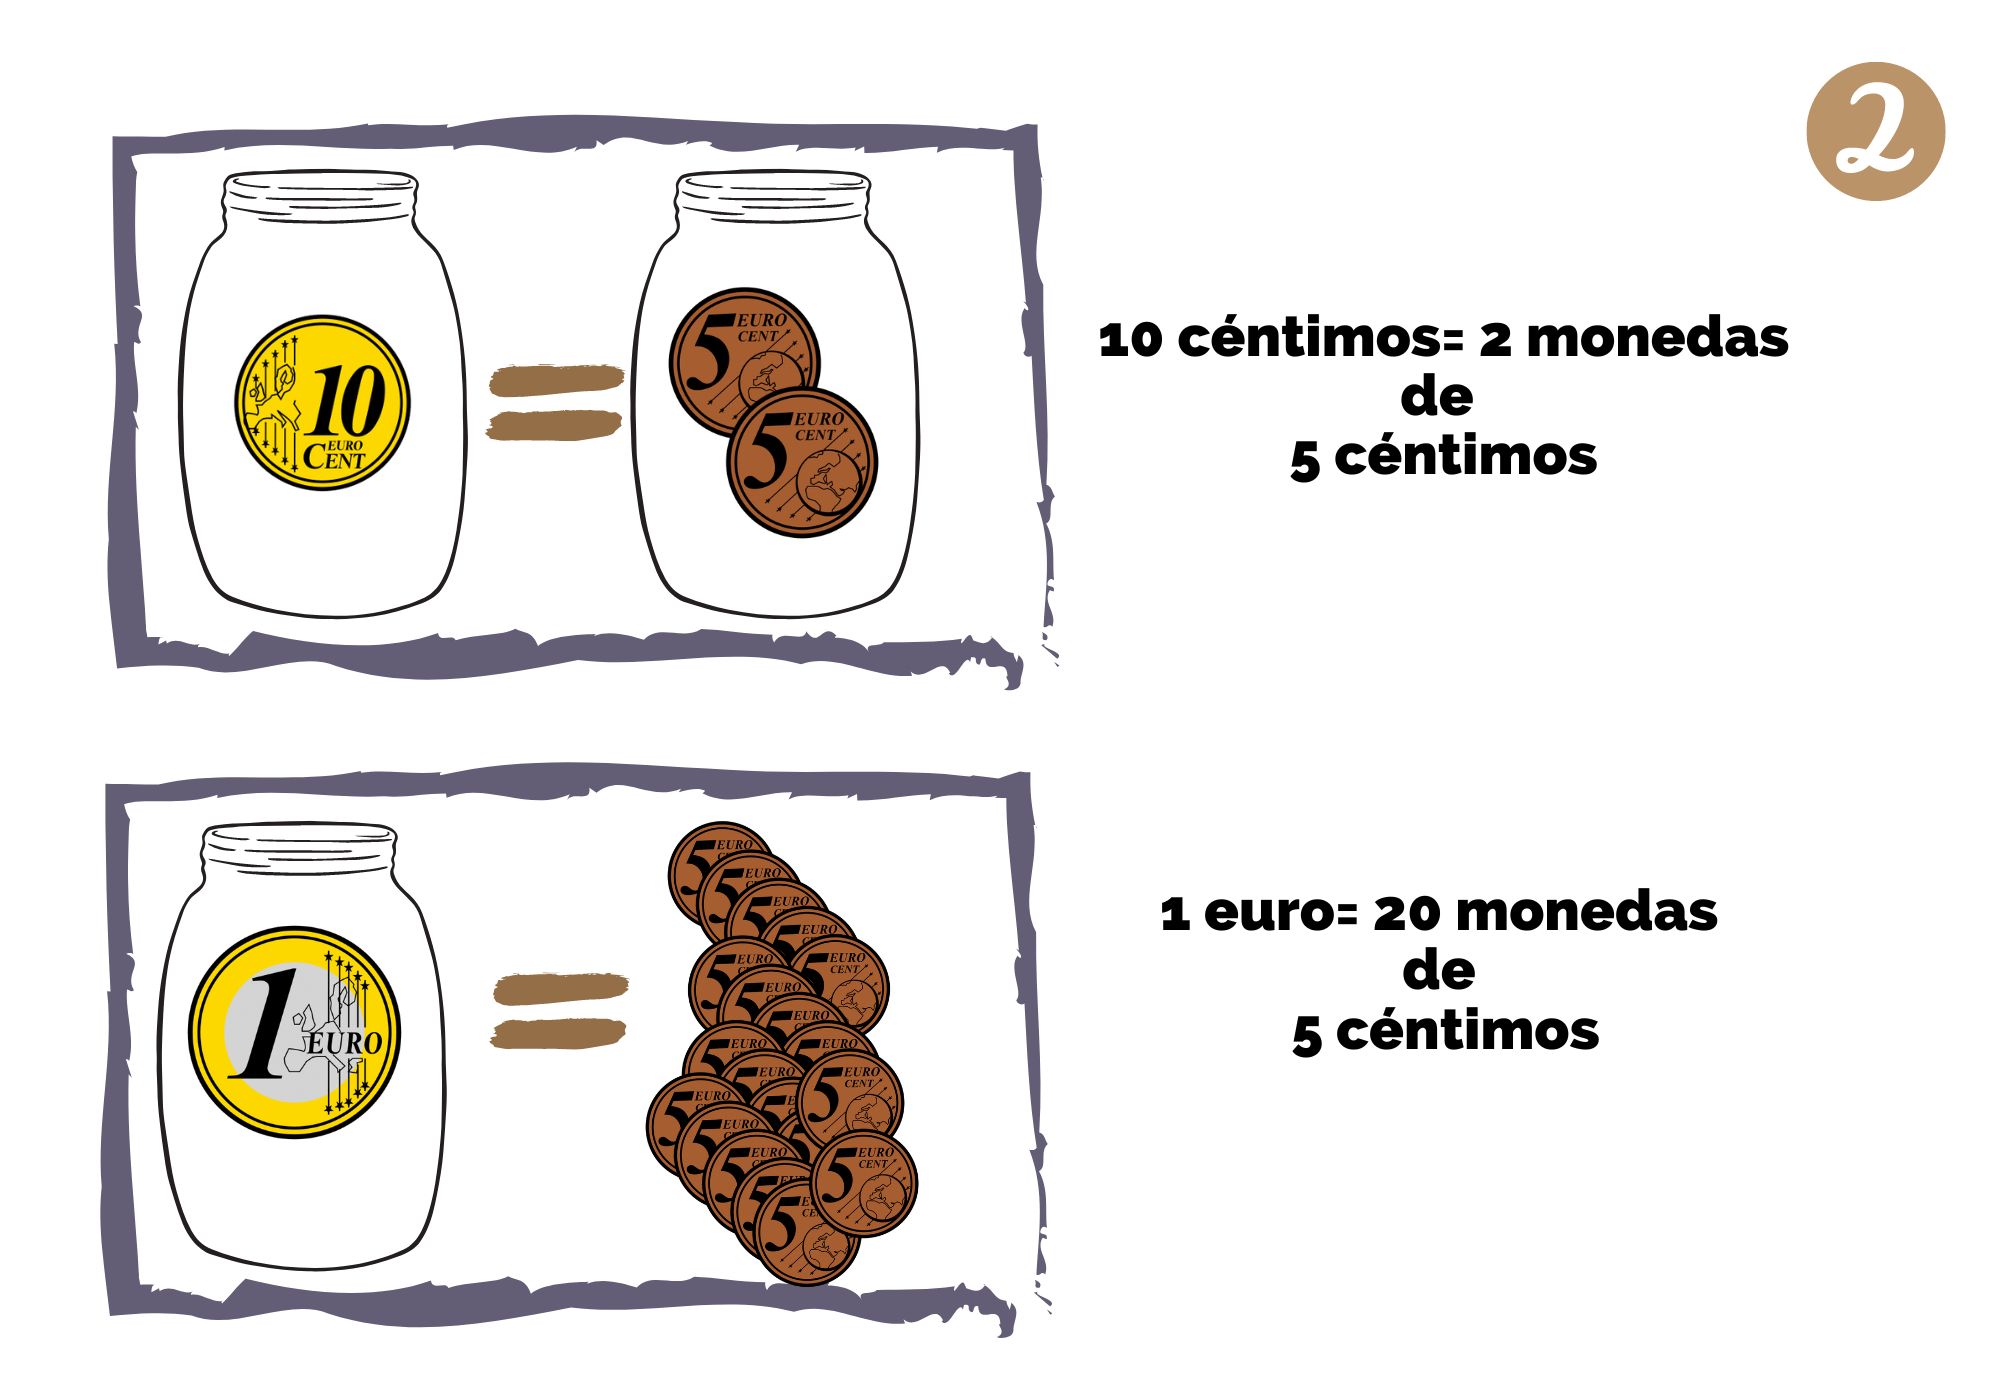 Imagen que muestra una moneda de 10 céntimos, un signo igual y 2 monedas de 5 céntimos. Además, muestra otra imagen la equivalencia entre 20 monedas de 5 céntimos y 1 euro.